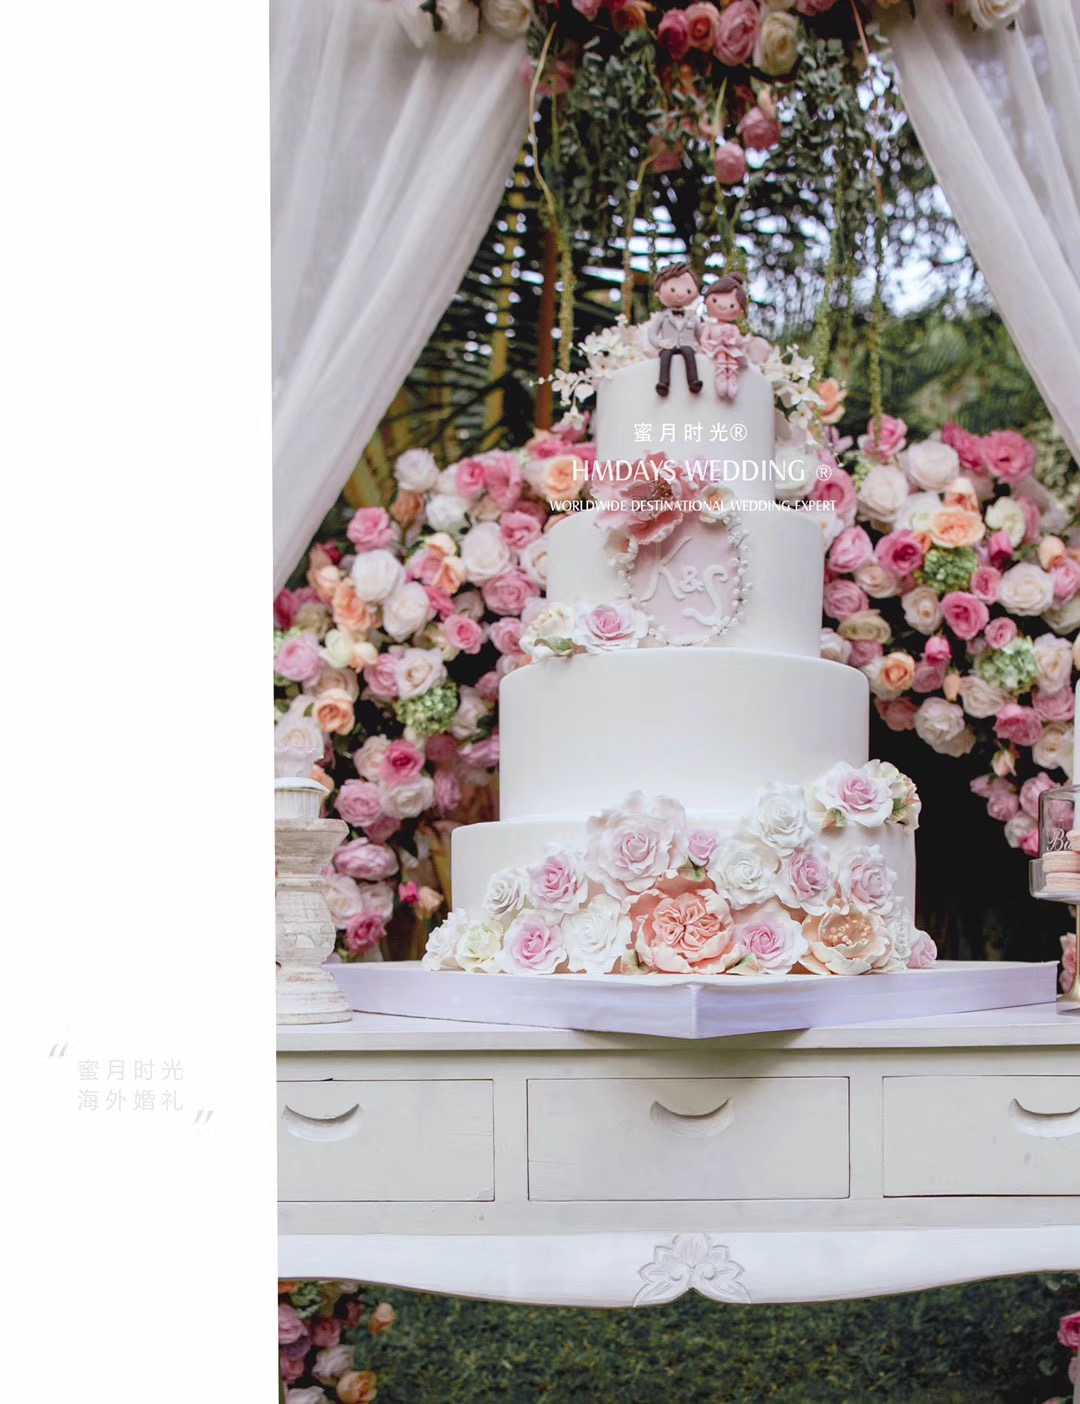 海外婚礼巴厘岛婚礼甜品台|海外婚礼定制中高端布置案例|巴厘岛婚礼布置定制案例